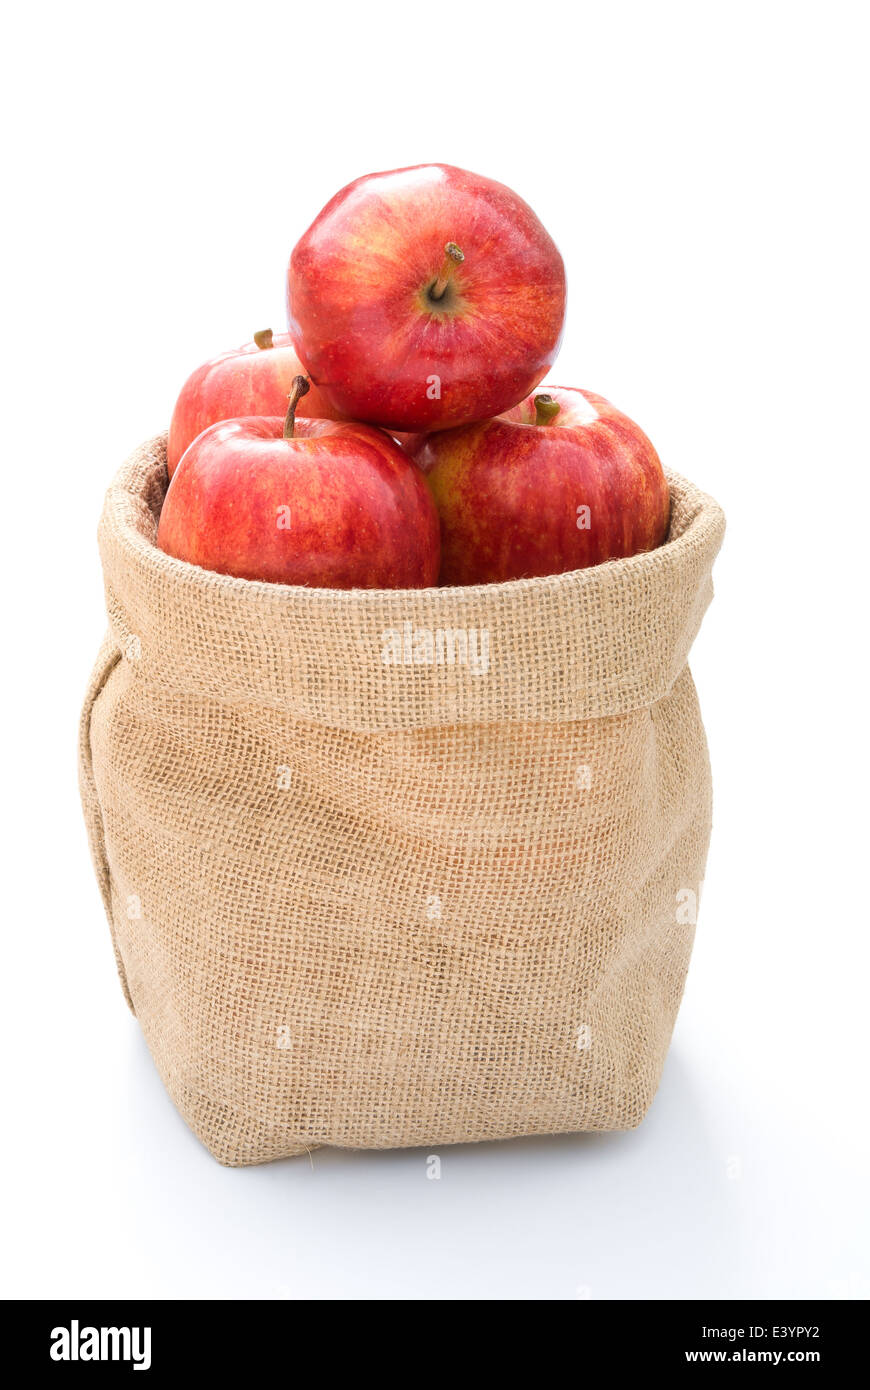 fresh apples in gunny bag on white Stock Photo